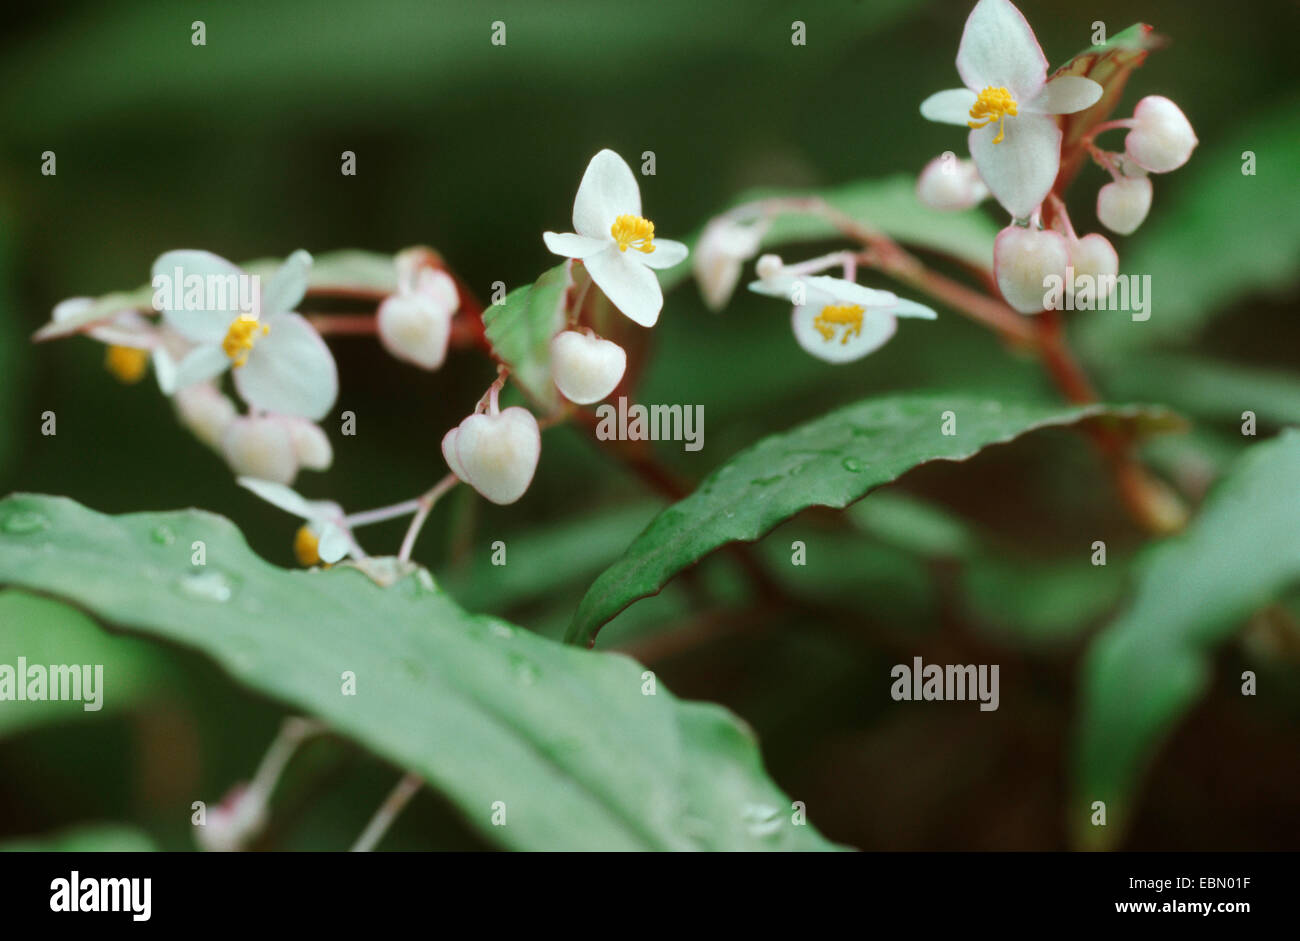 Begonia, Begonia boisiana (Begonia boisiana) Stock Photo